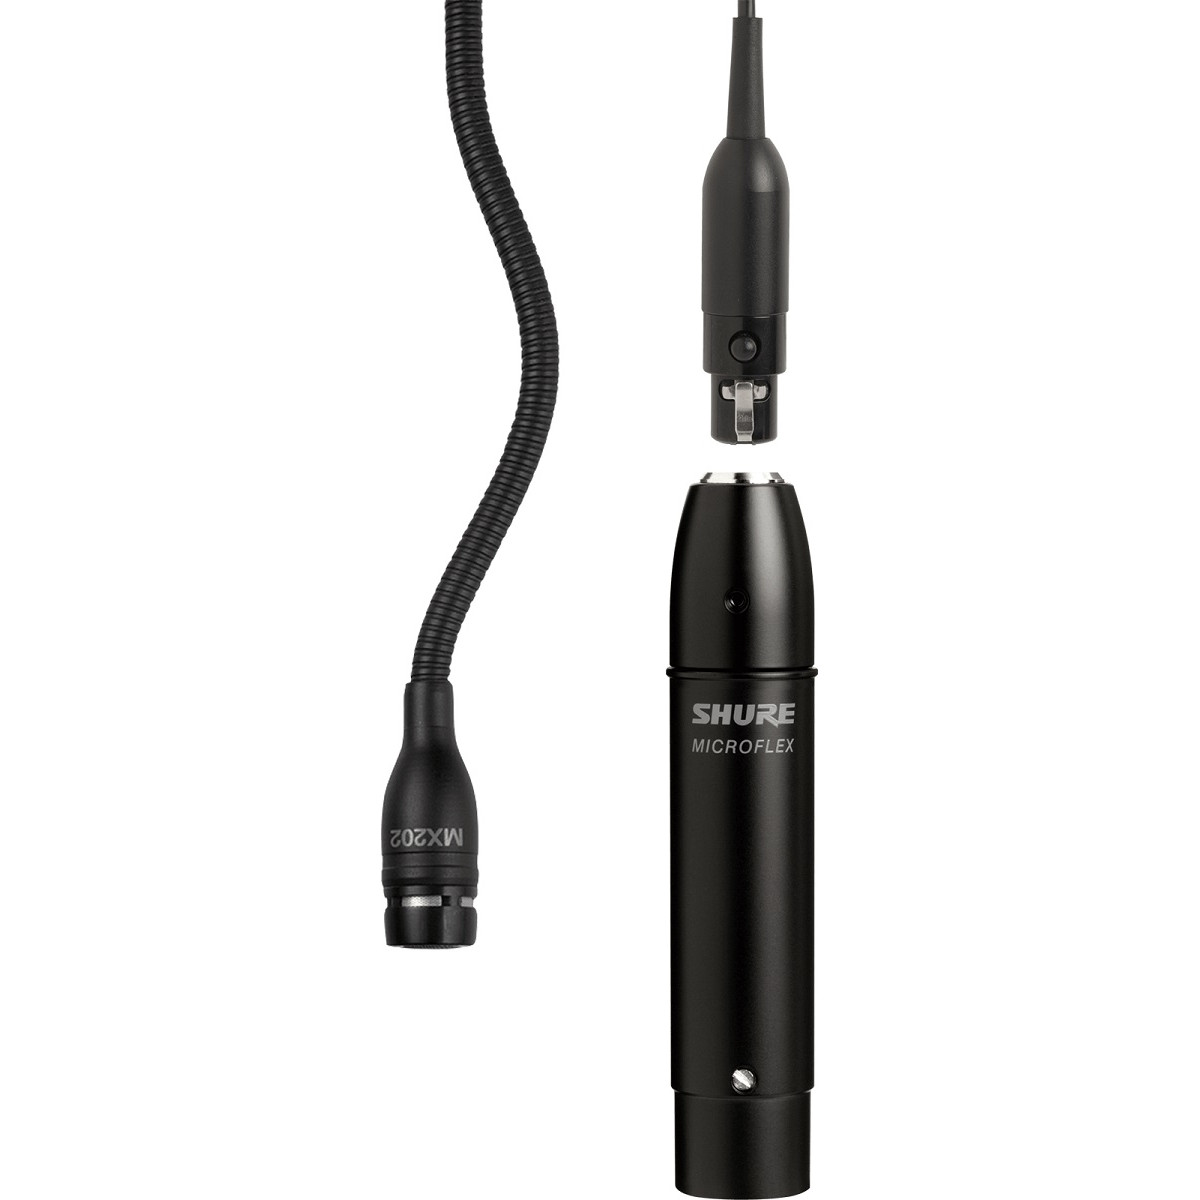 Micrófono mini-condens Cardioide Previo y Adaptador de soporte. Negro.